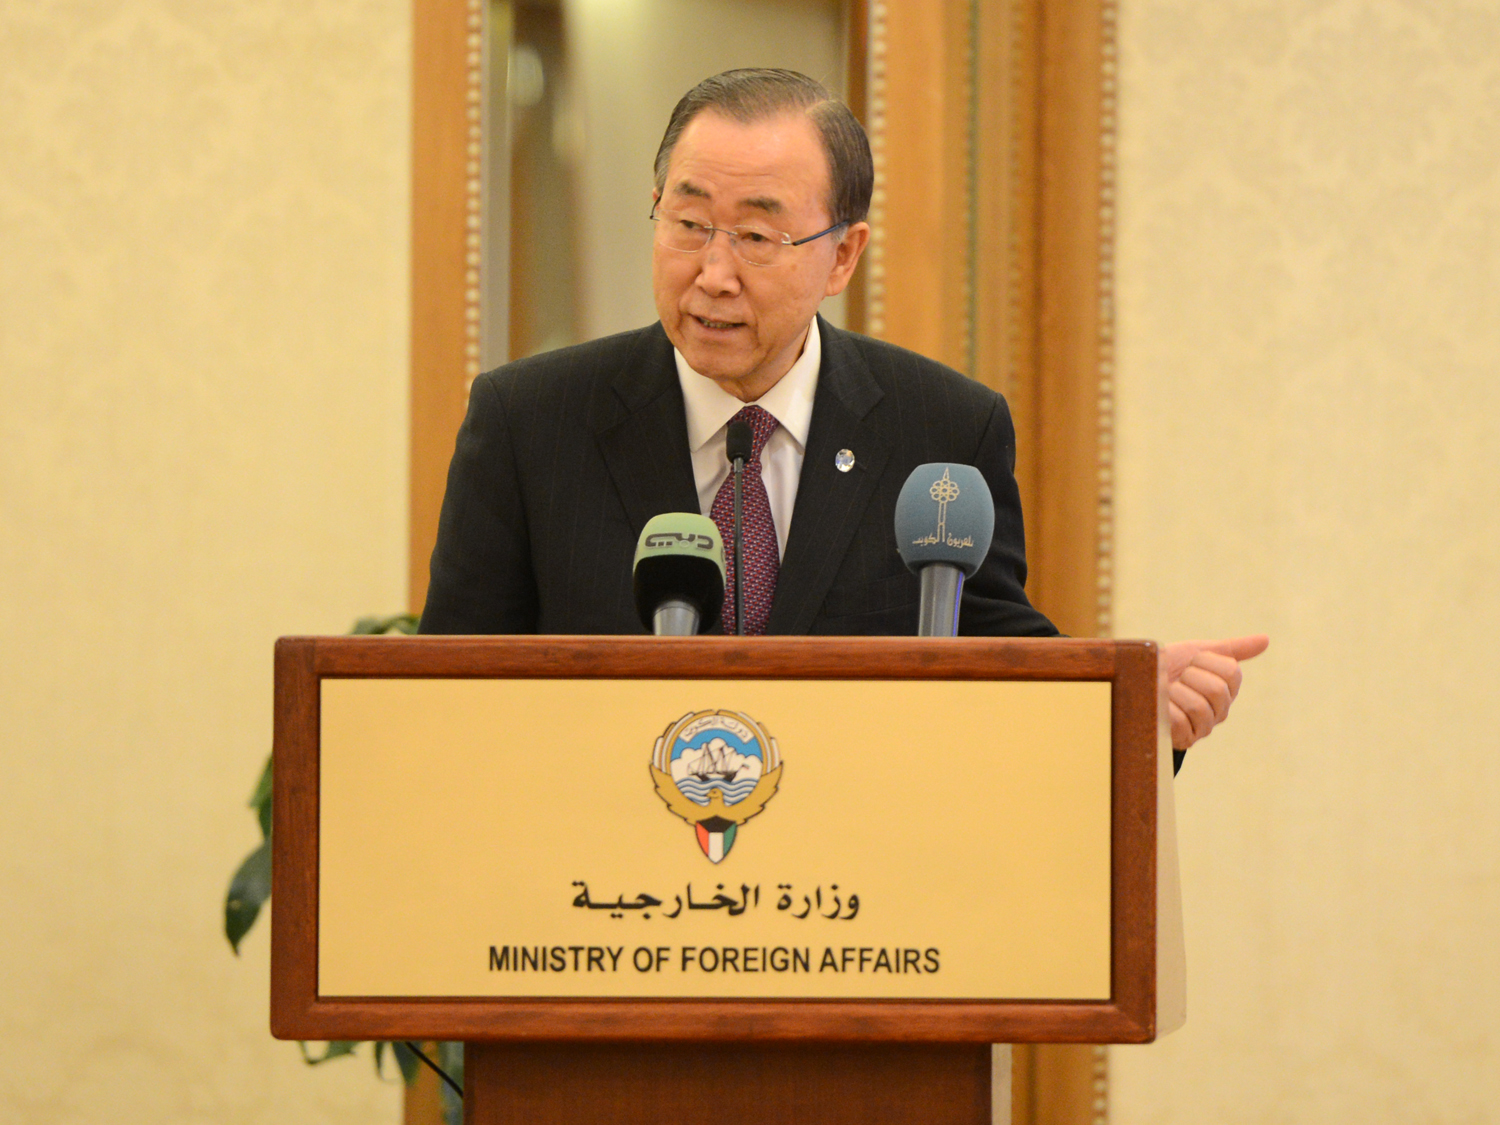 UN Secretary General Ban Ki-moon